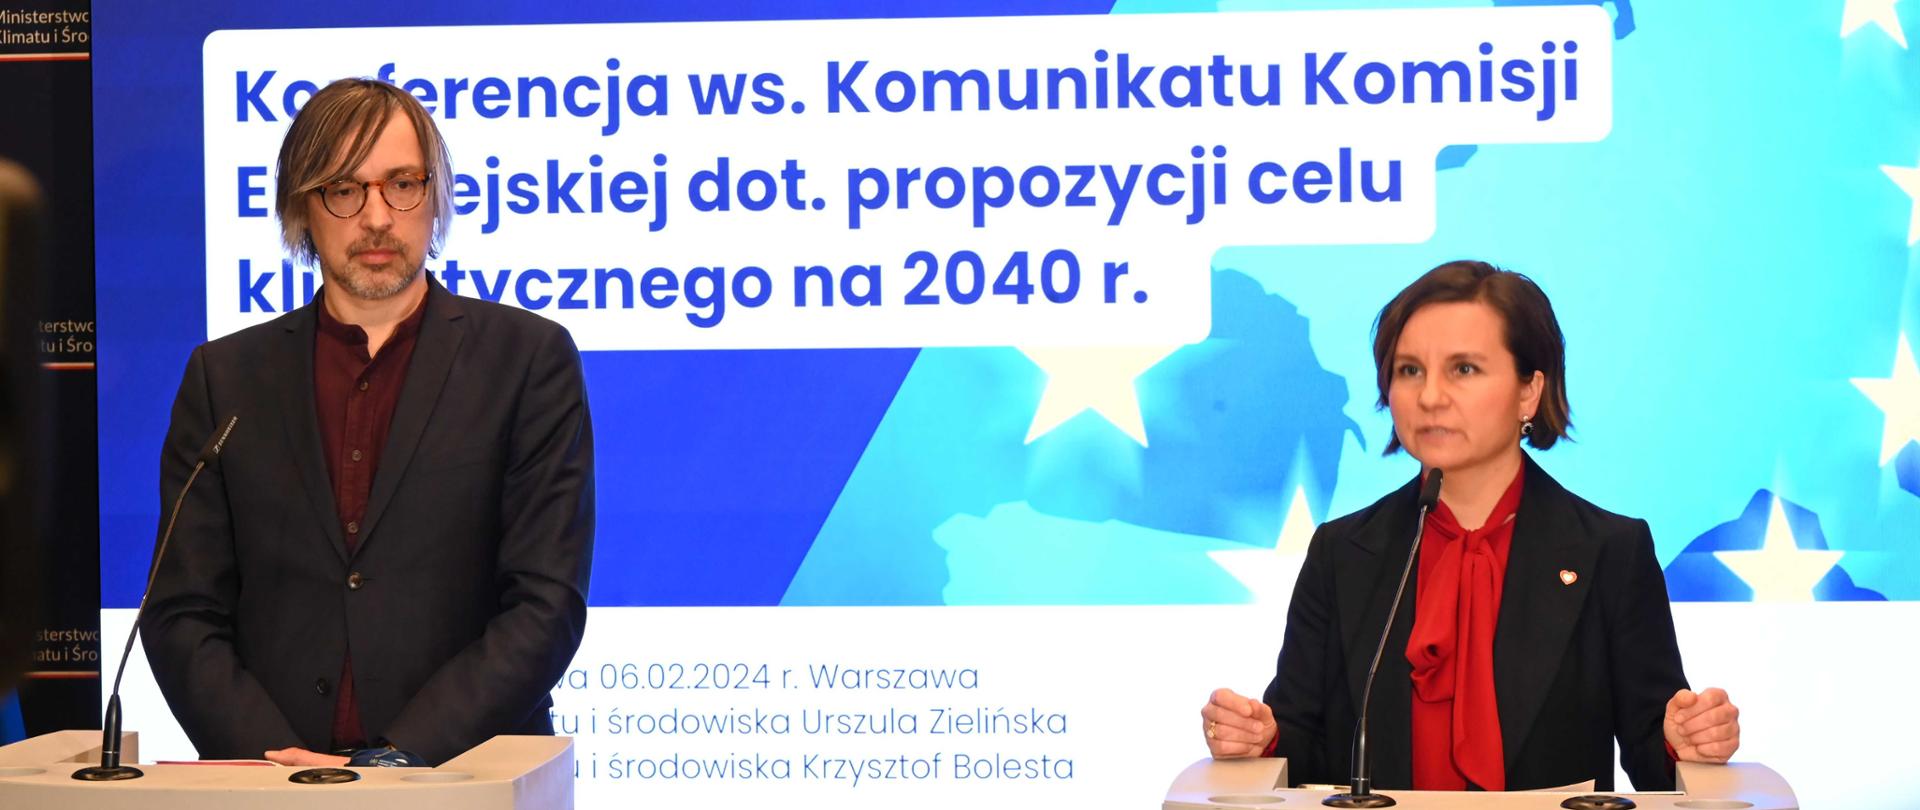 konferencja prasowa z udziałem wiceministry klimatu i środowiska Urszuli Zielińskiej oraz wiceministra klimatu i środowiska Krzysztofa Bolesty 